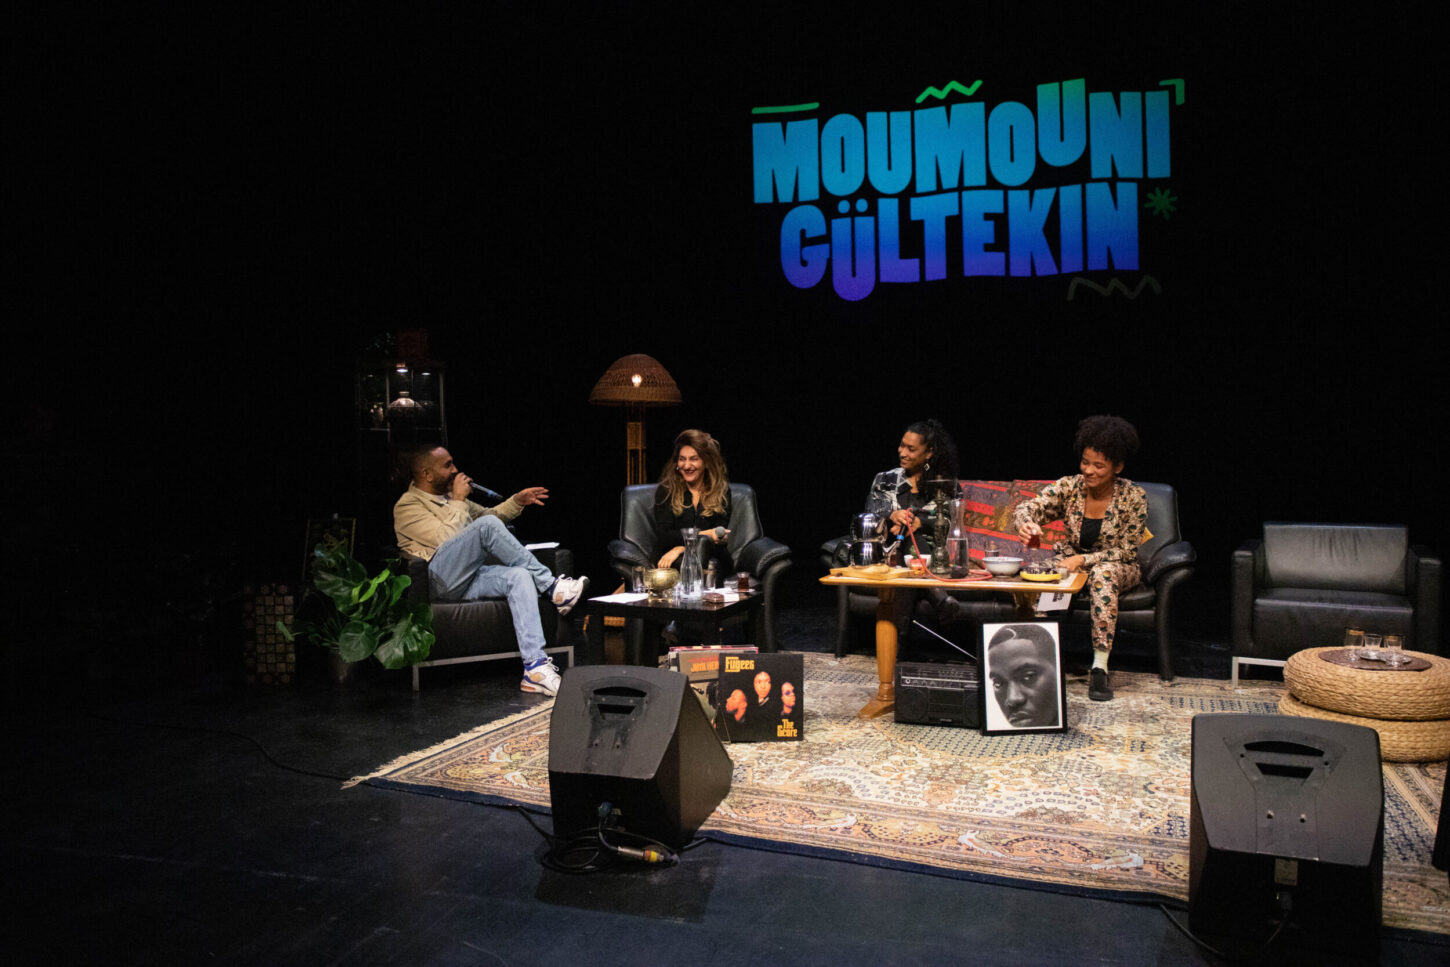 Die erste postmigrantische Late Night Show der Schweiz von Fatima Moumouni, Uğur Gültekin geht in die zweite Staffel.